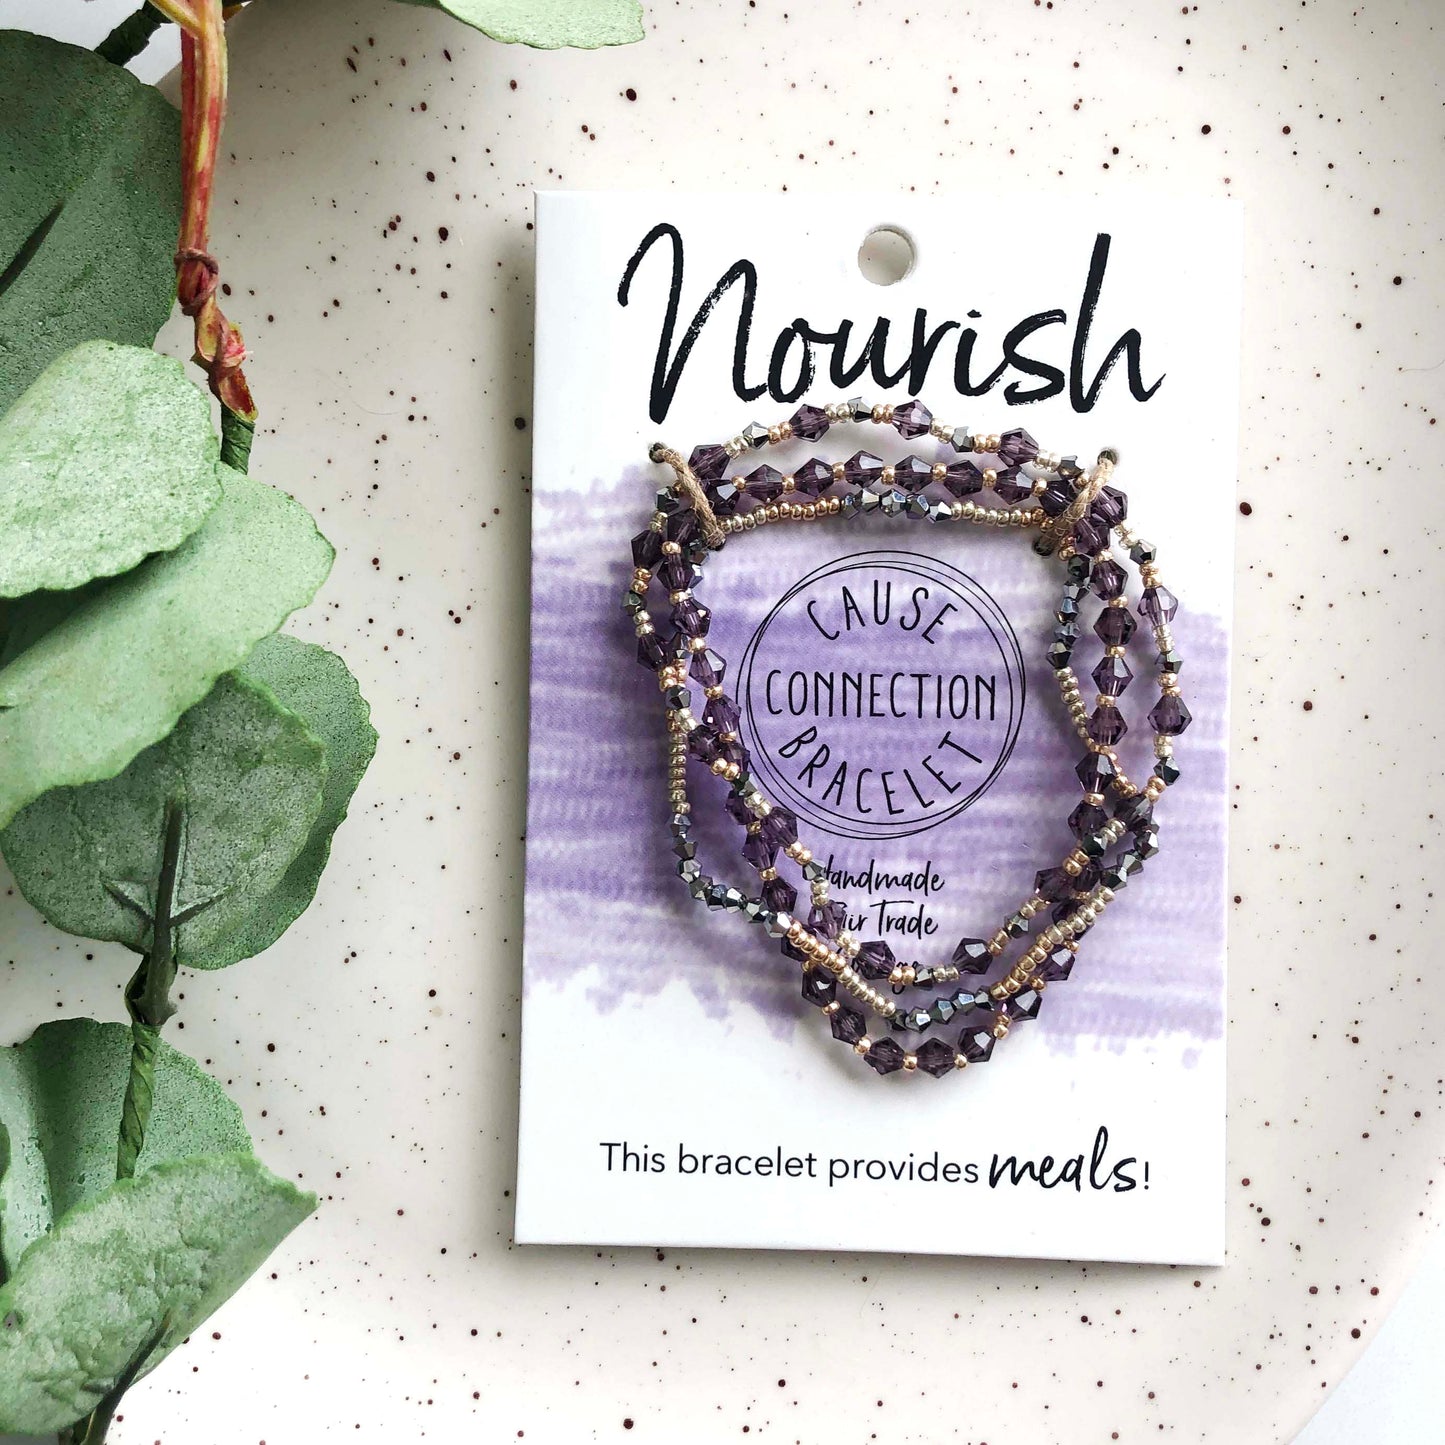 Nourish • Cause Connection Bracelet